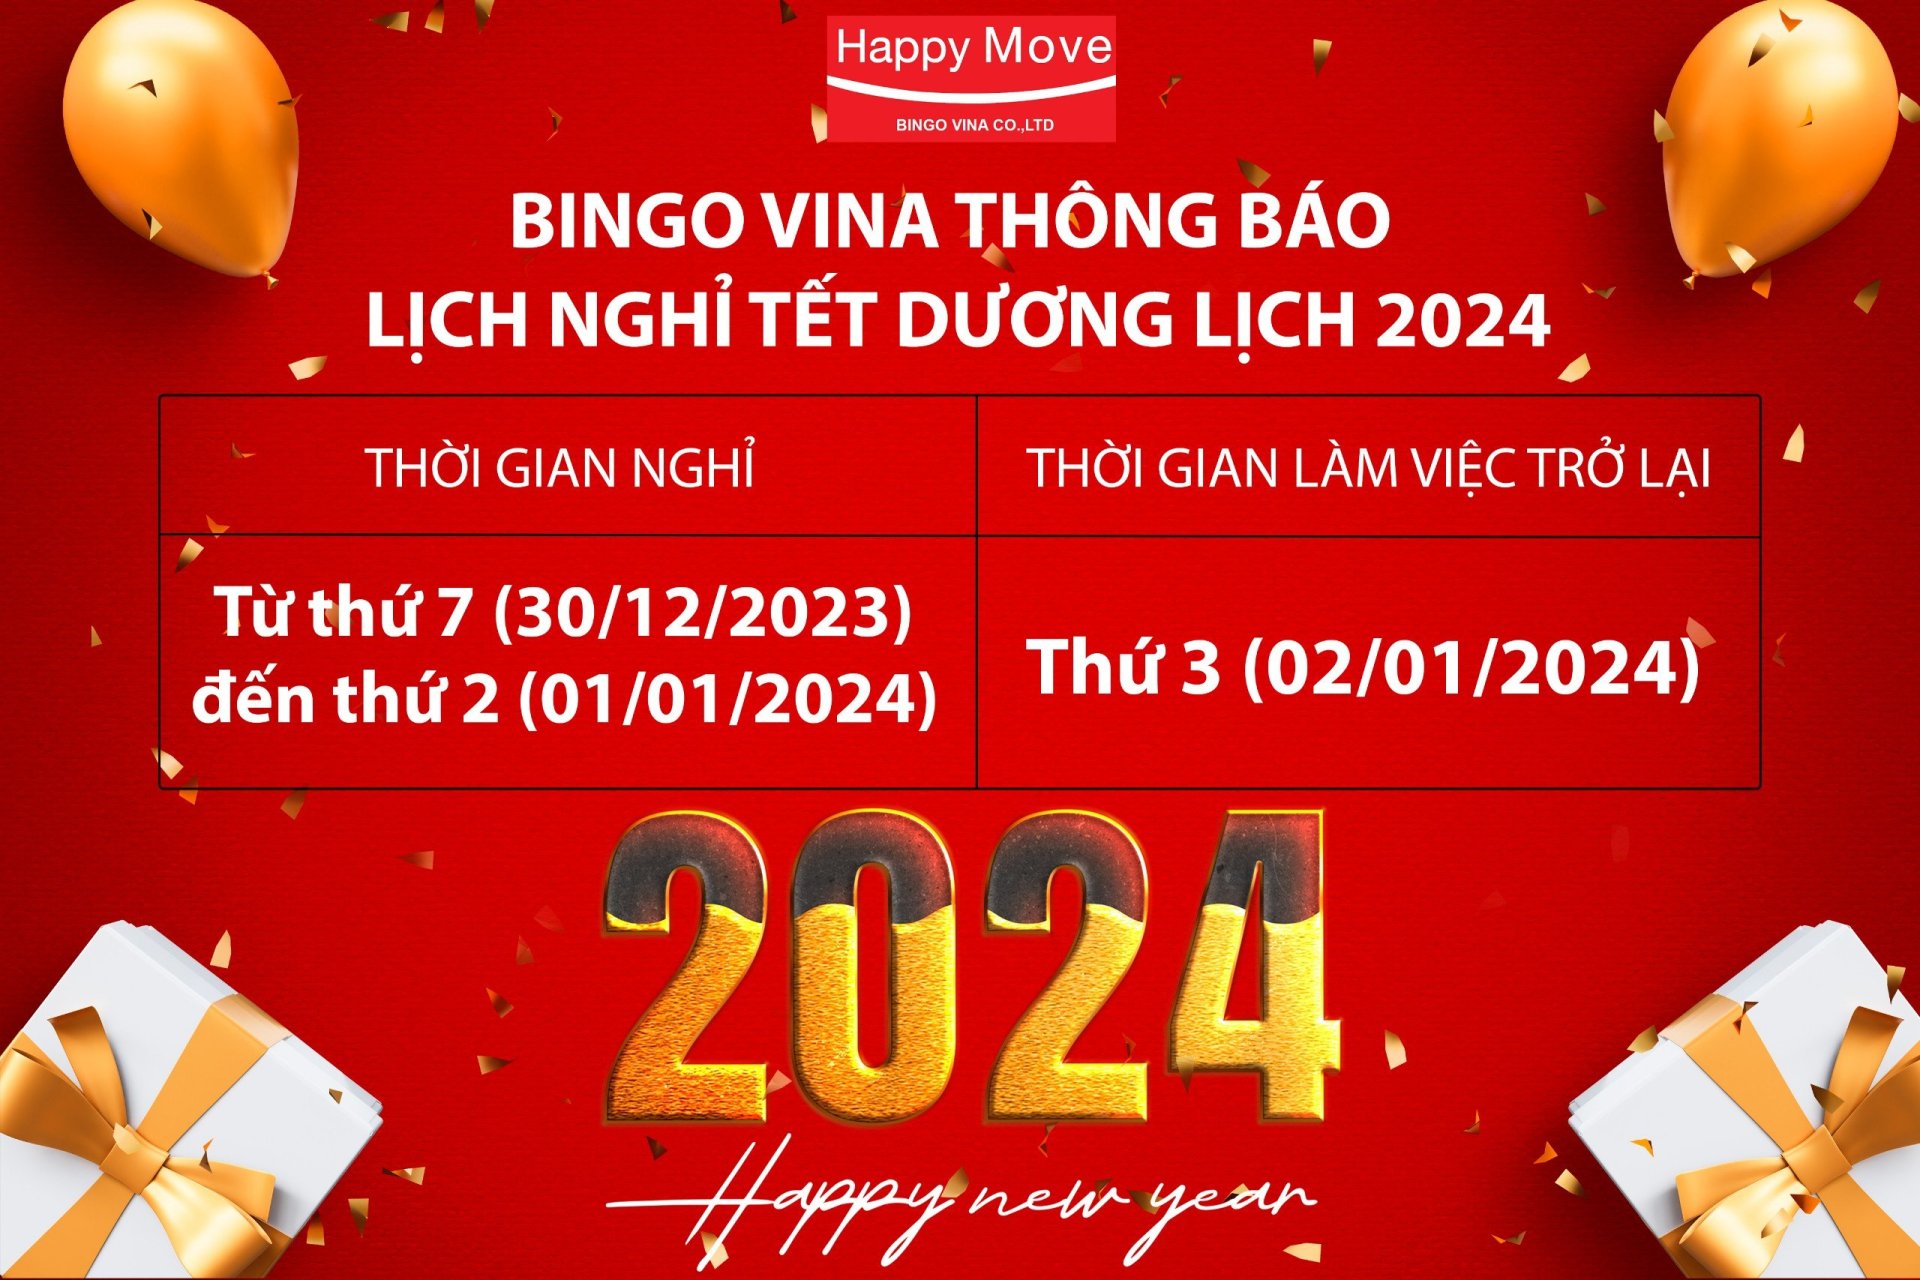 Bingo Vina thông báo lịch nghỉ Tết Dương Lịch 2024